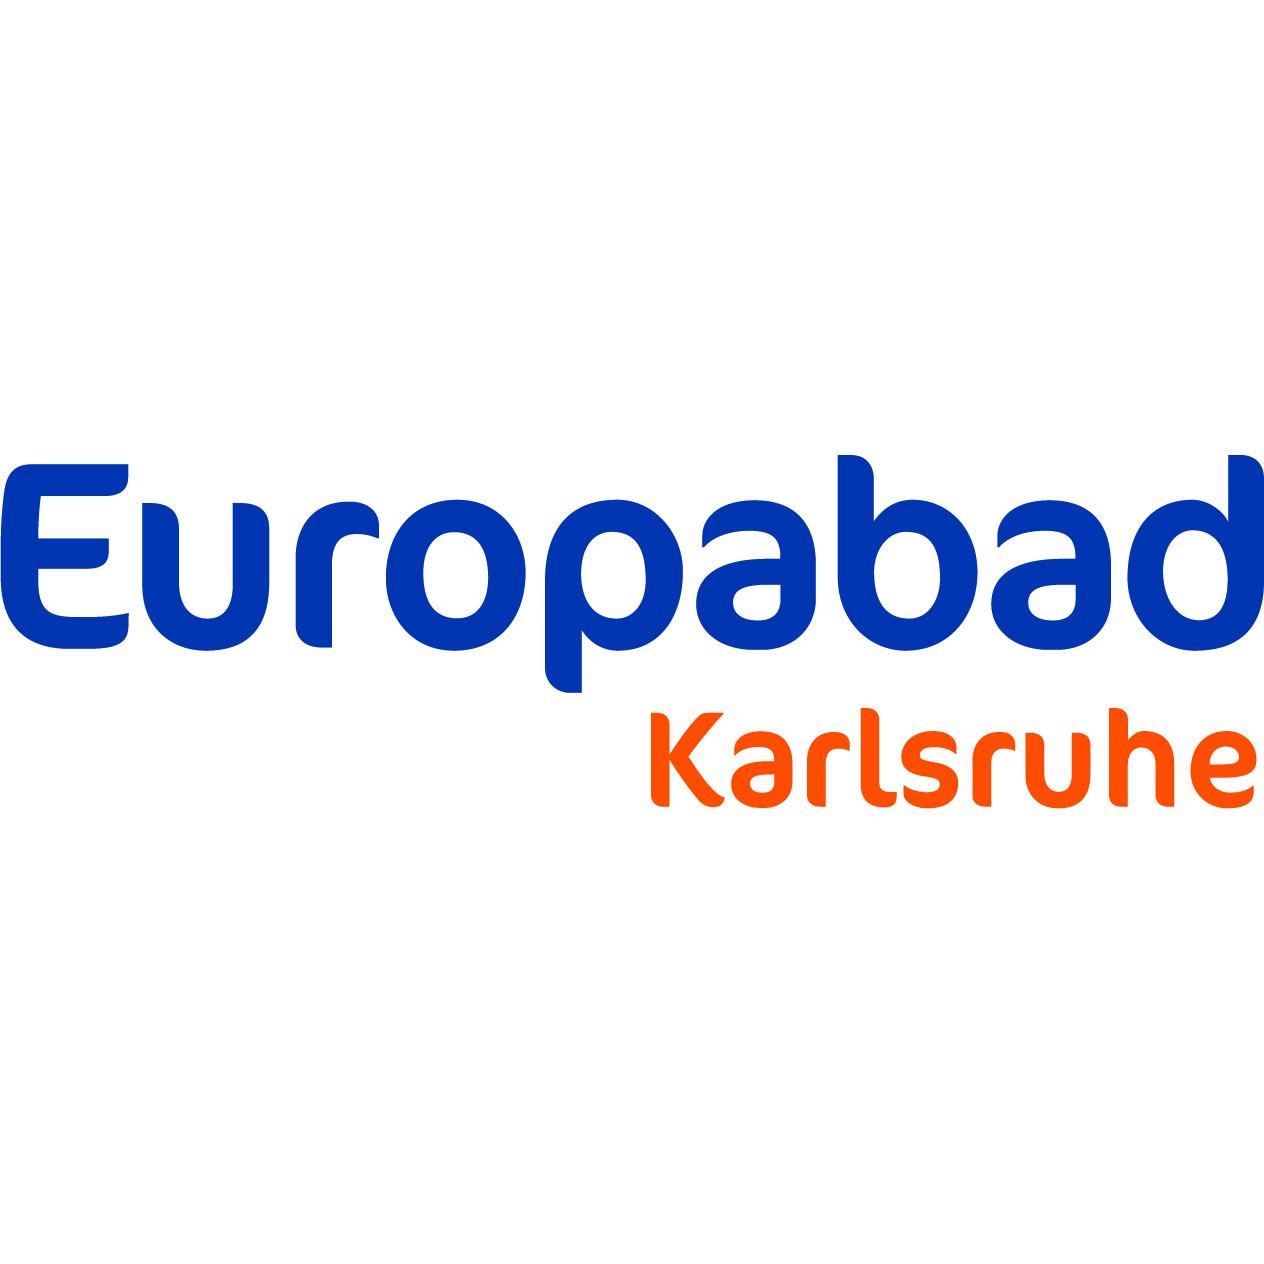 Europabad Karlsruhe in Karlsruhe - Logo